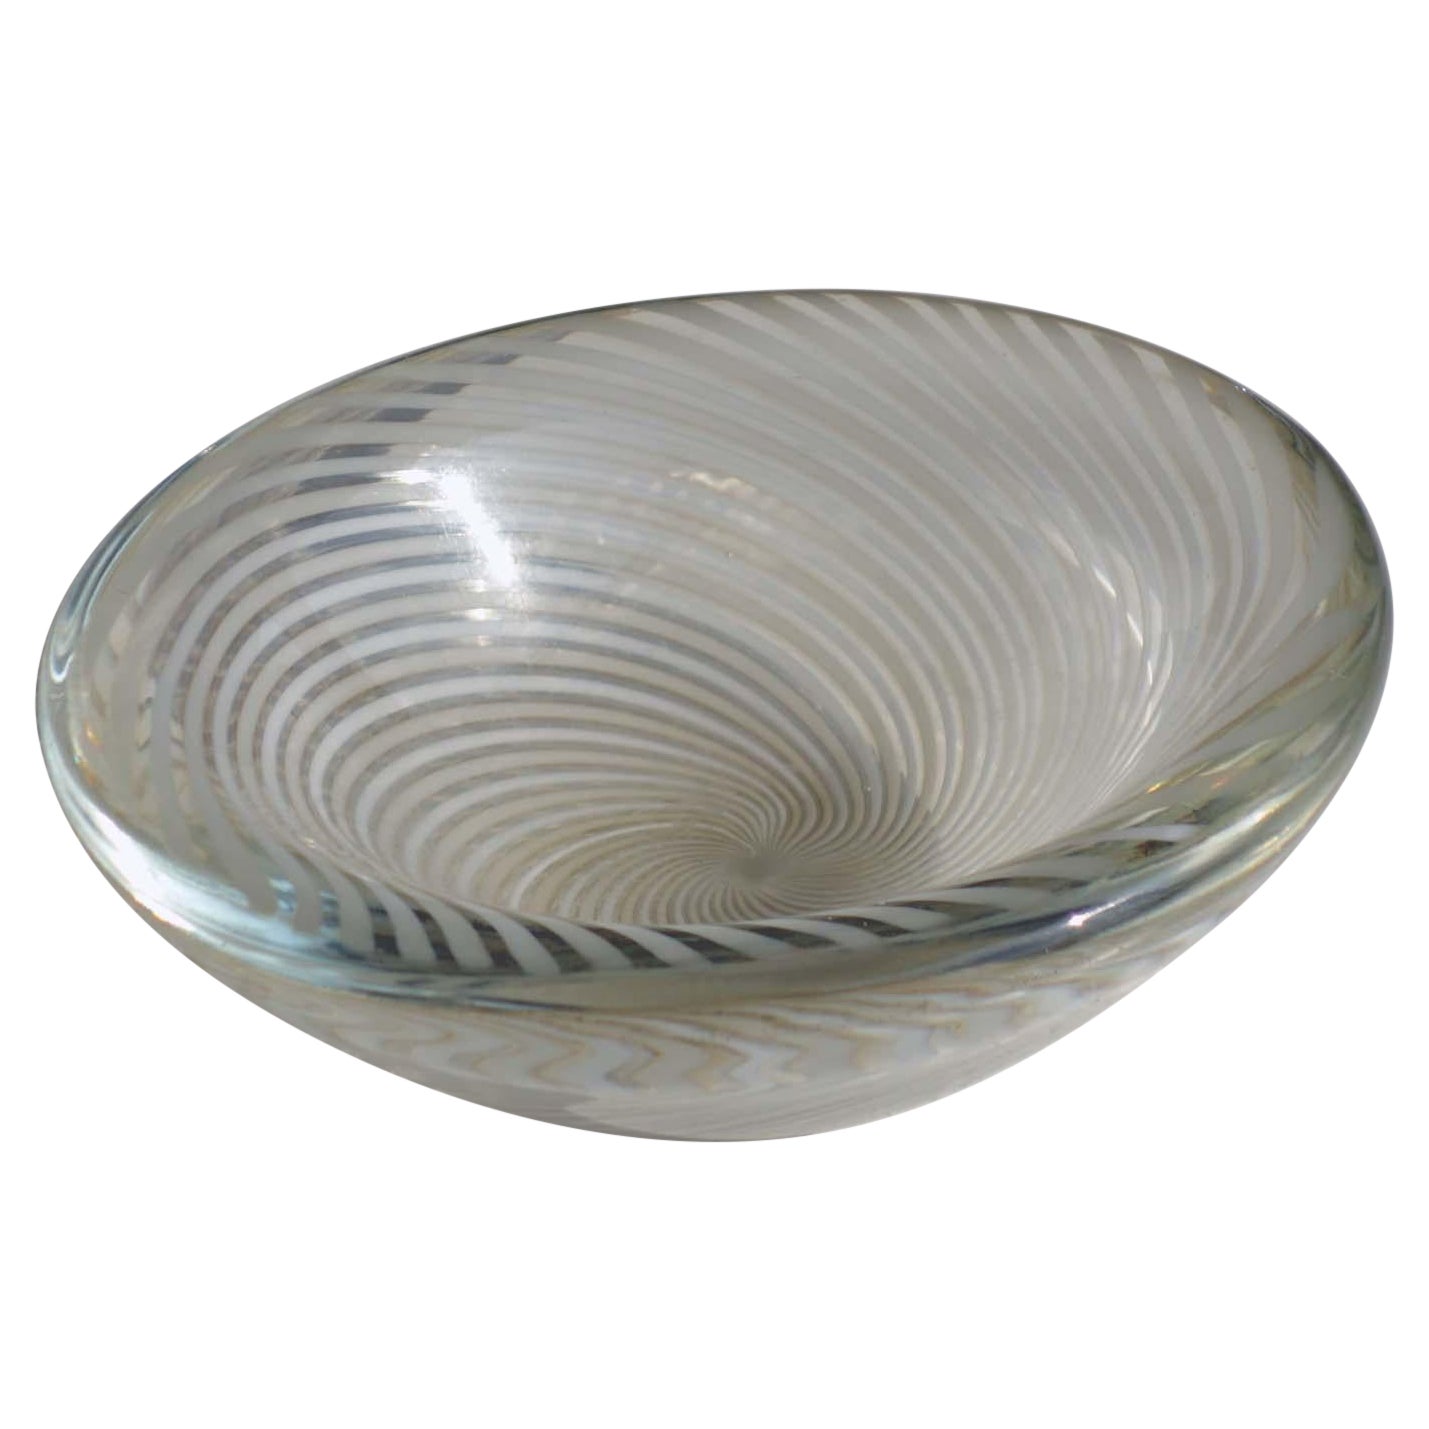 1950 "Mezza Filigrana" Carlo Scarpa Venini Italian design Murano Glass Bowl For Sale